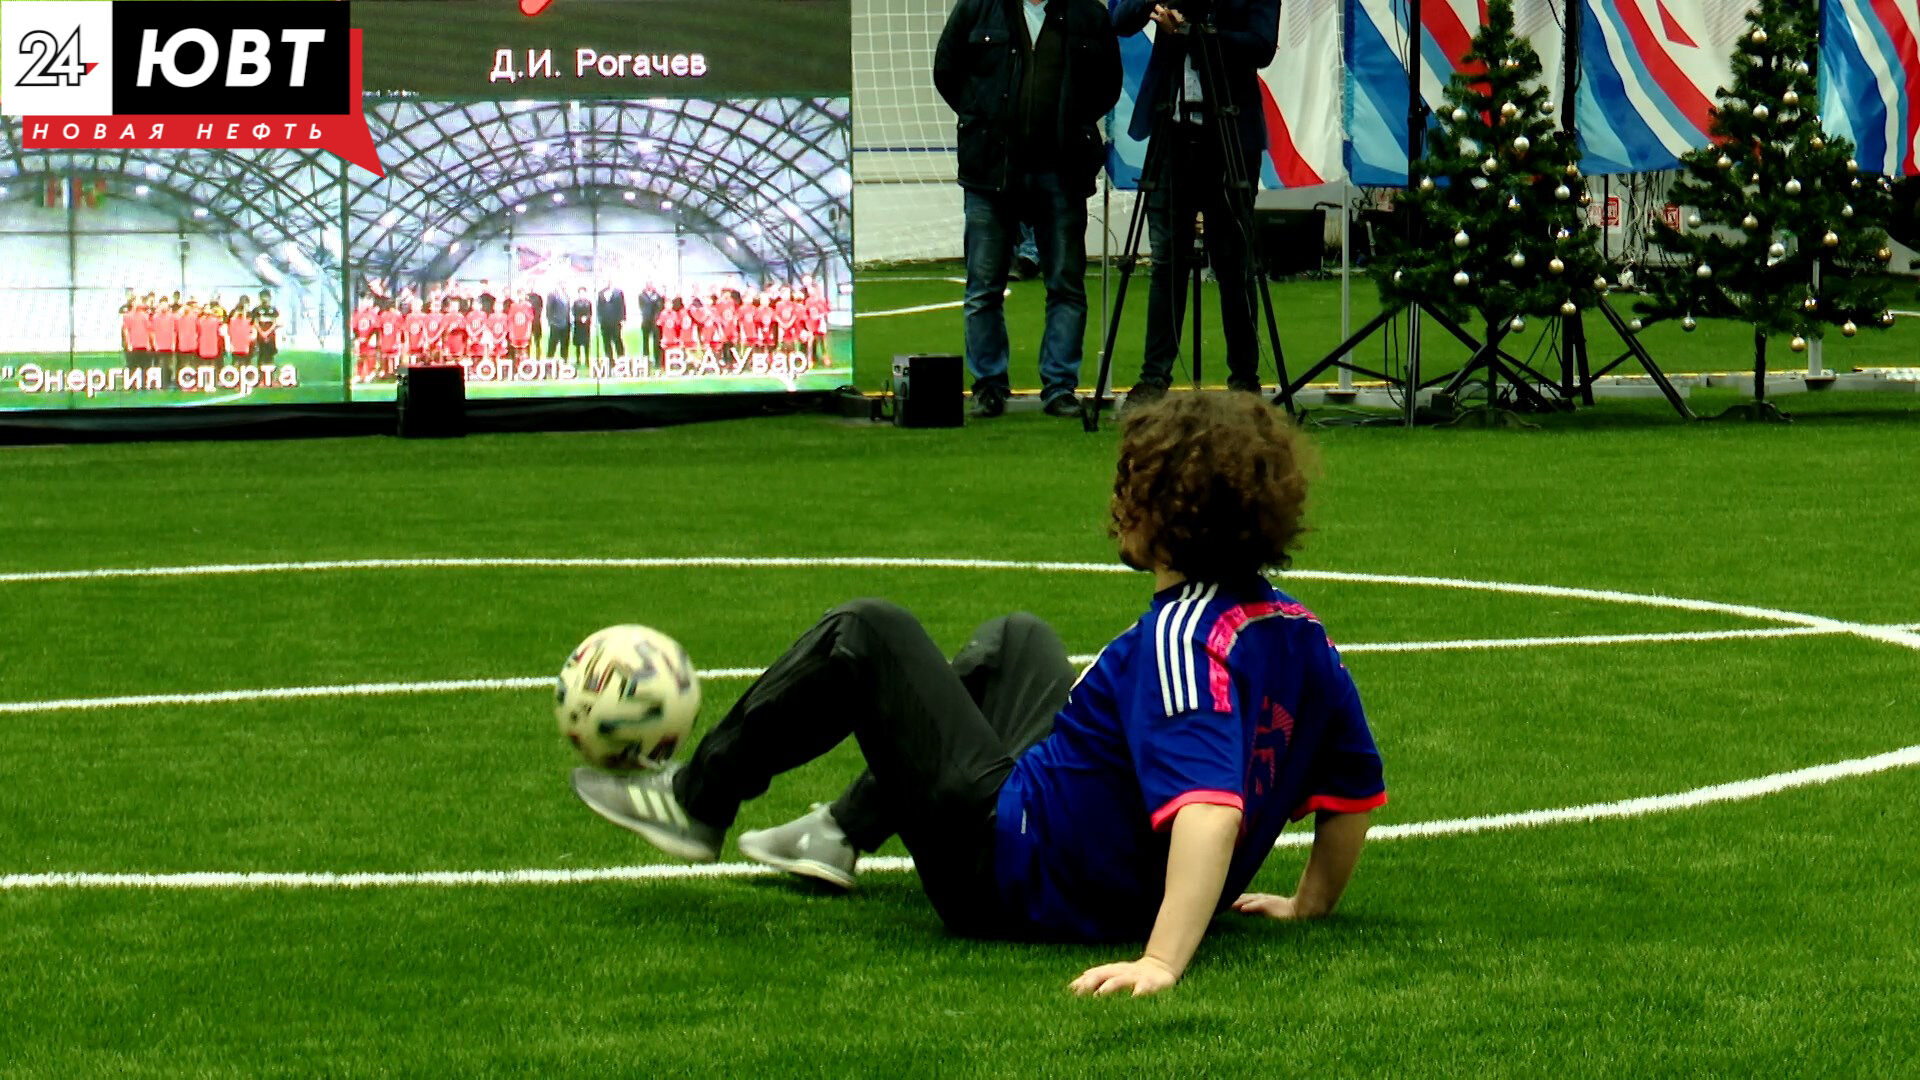 В Альметьевск на открытие футбольного манежа приехали московские спортсмены